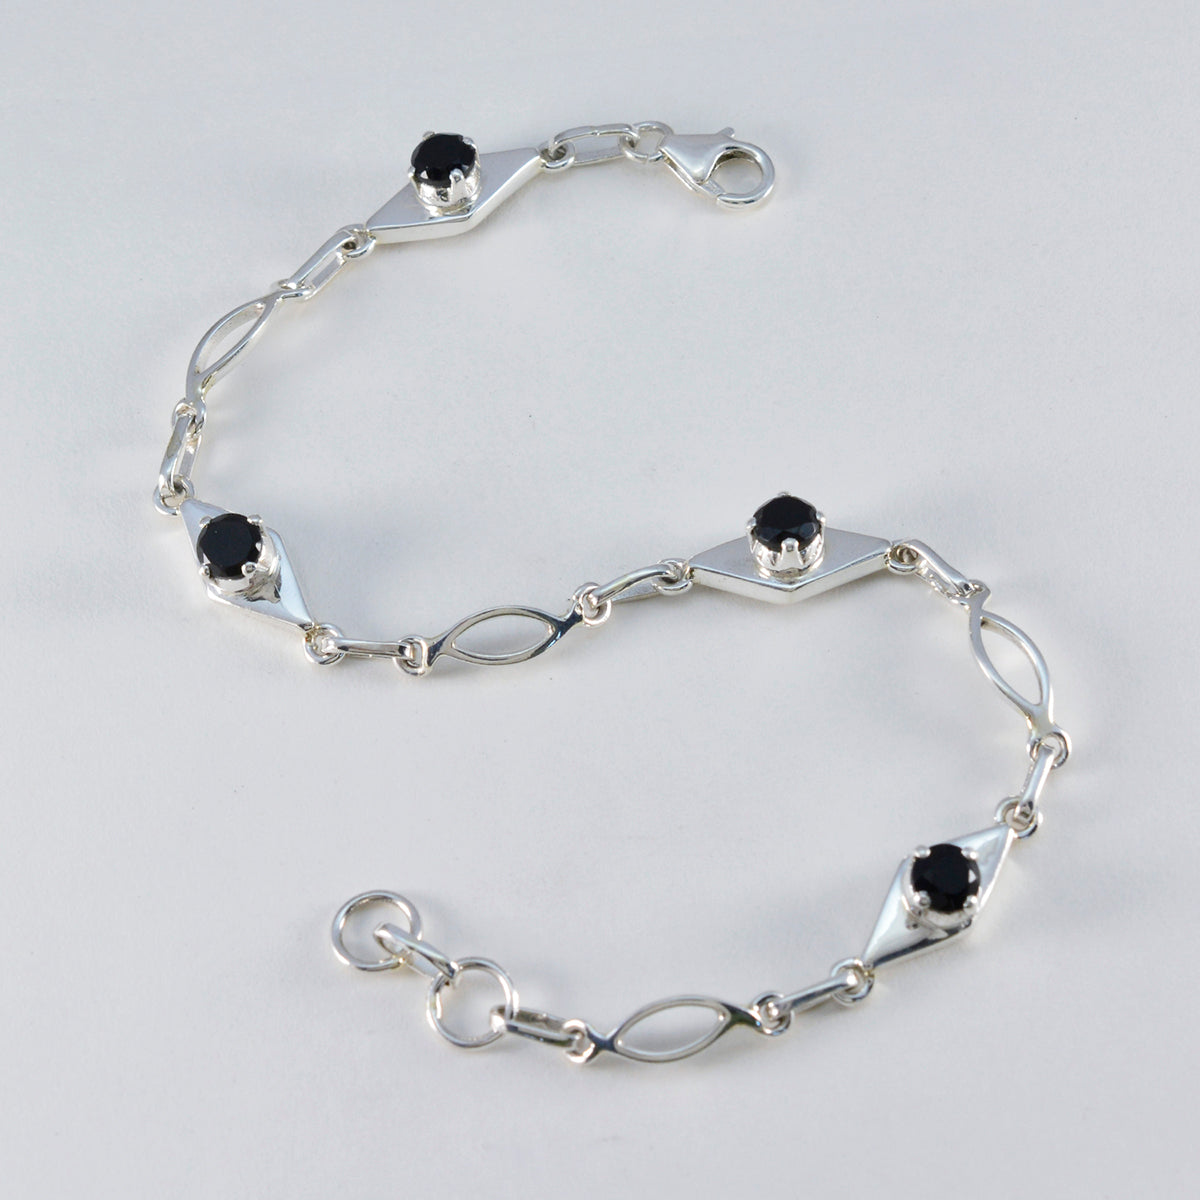 Riyo Antik-Armband aus 925er-Sterlingsilber für Damen, schwarzes Onyx-Armband, Krappenfassung, Armband mit Fischhaken-Gliederarmband, Größe L: 15,2–21,6 cm.